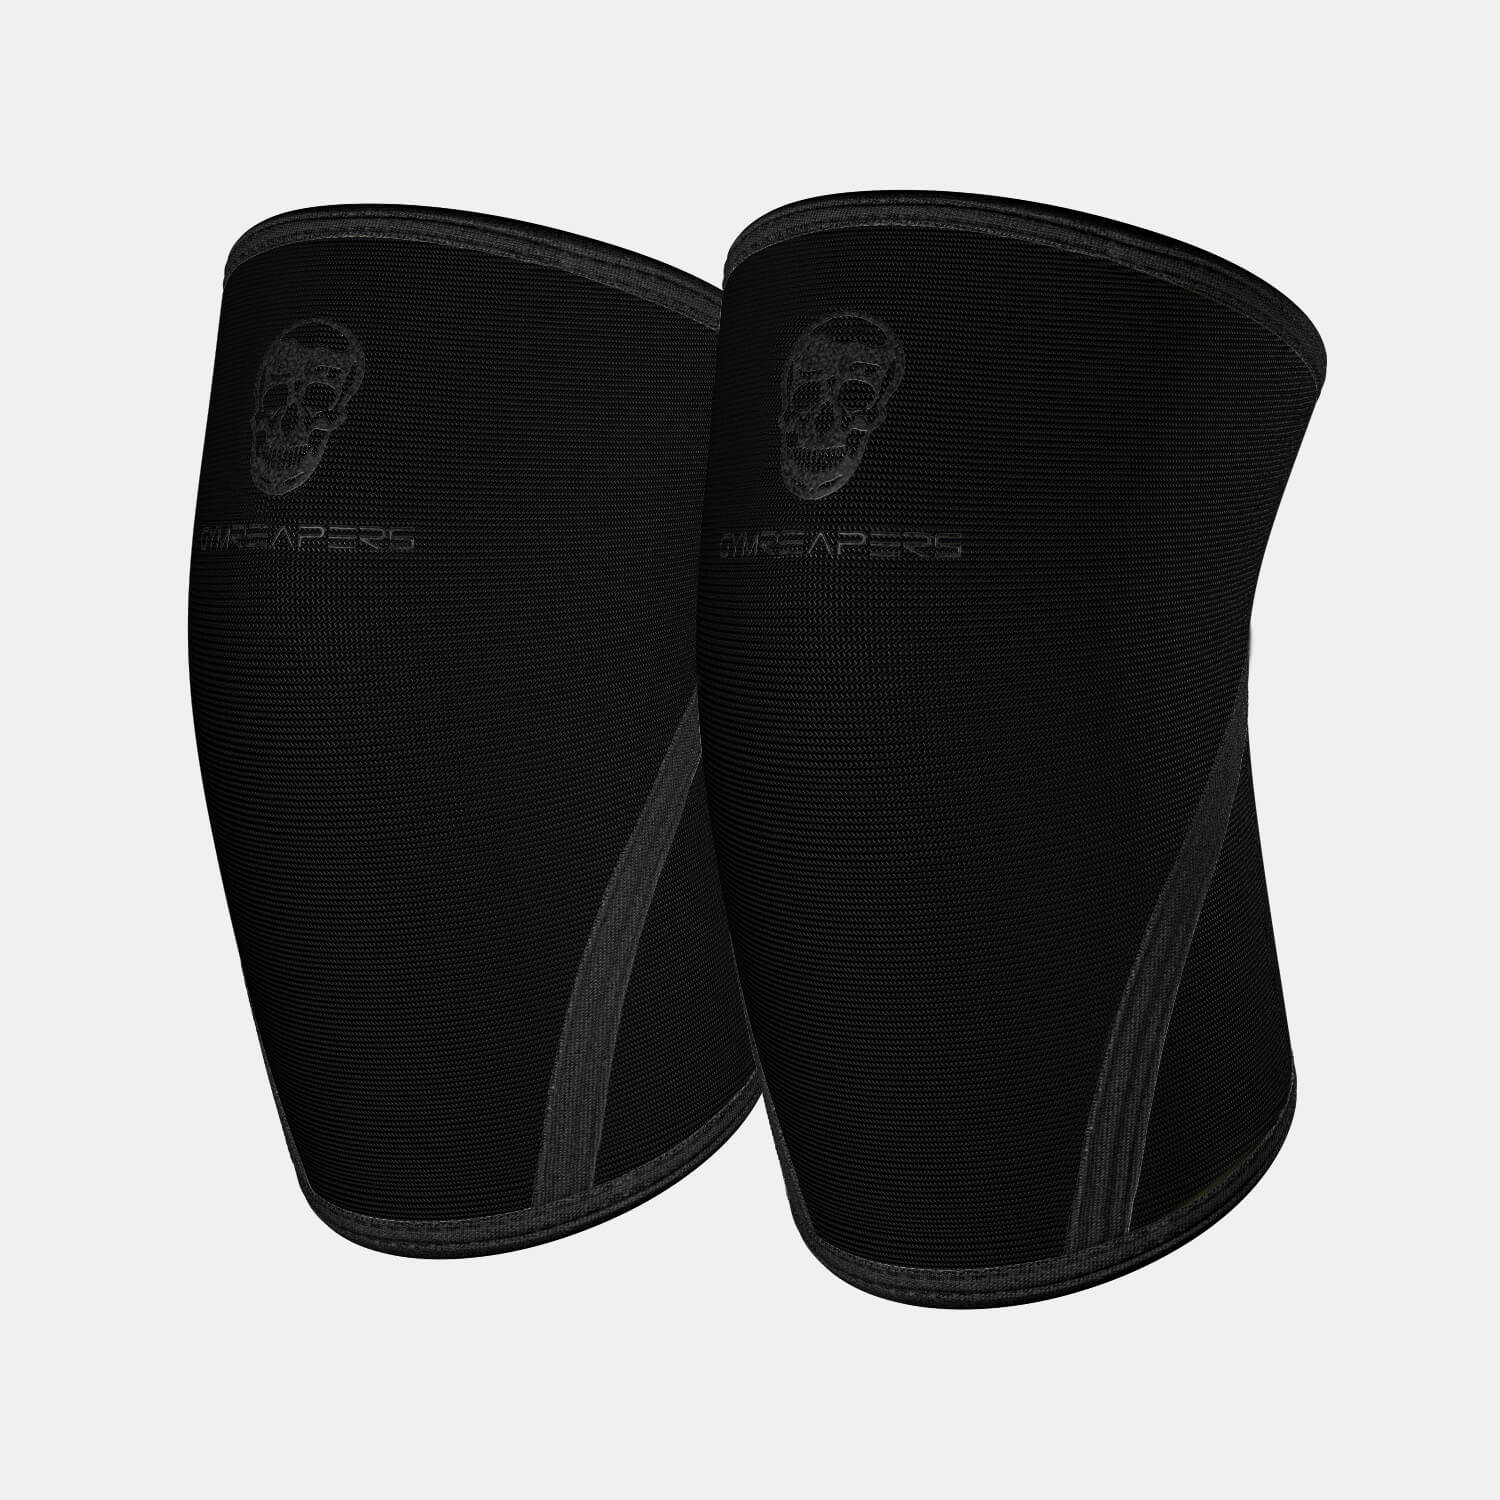 7mm - Neoprene Knee Sleeves - Black - IPF Approved